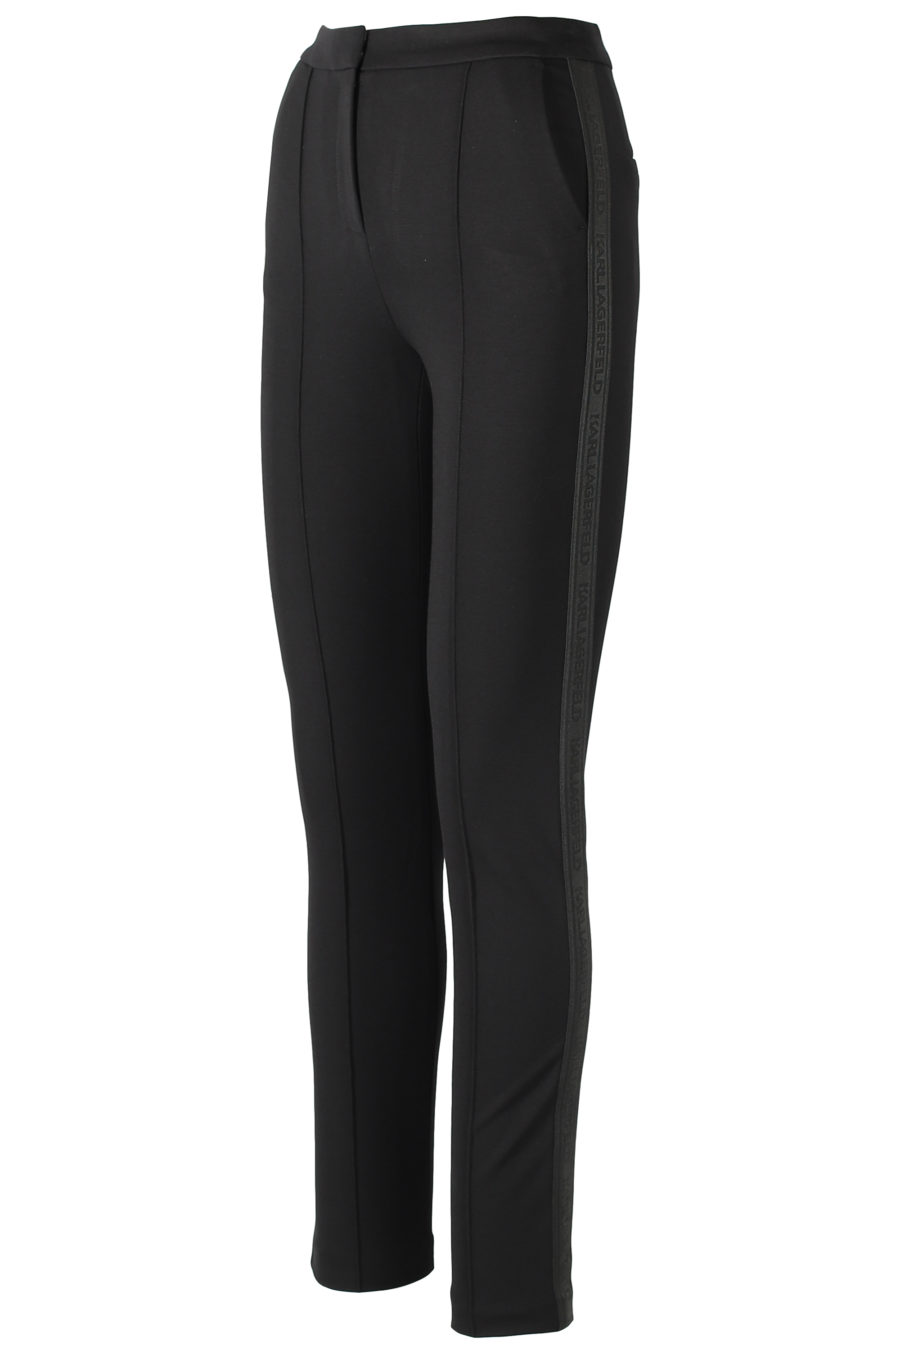 Pantalones negros ajustados con cinta logotipo - IMG 3198